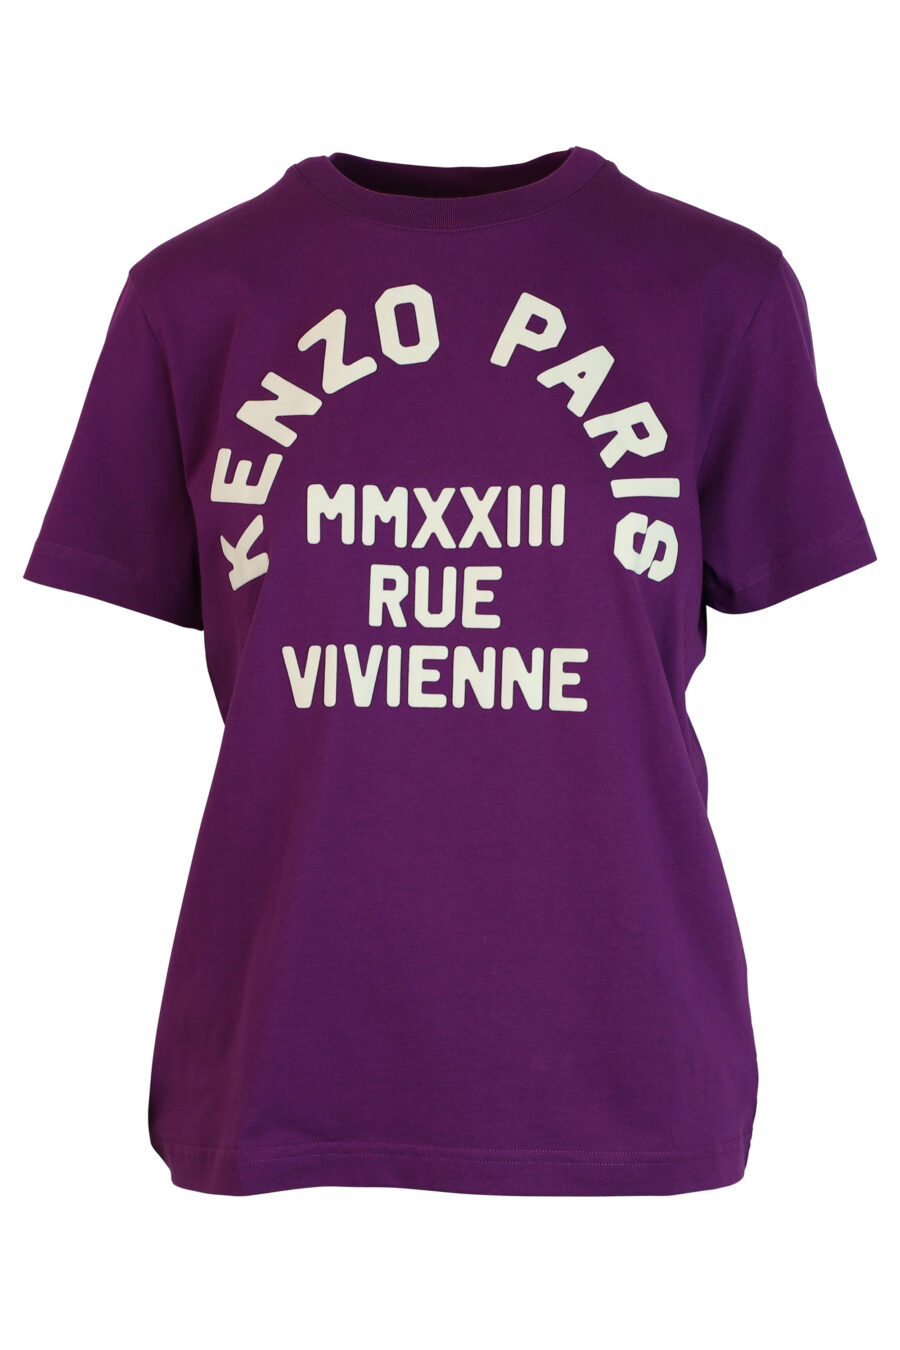 Lila T-Shirt mit weißem "rue vivienne" Maxi-Logo - 3612230461253